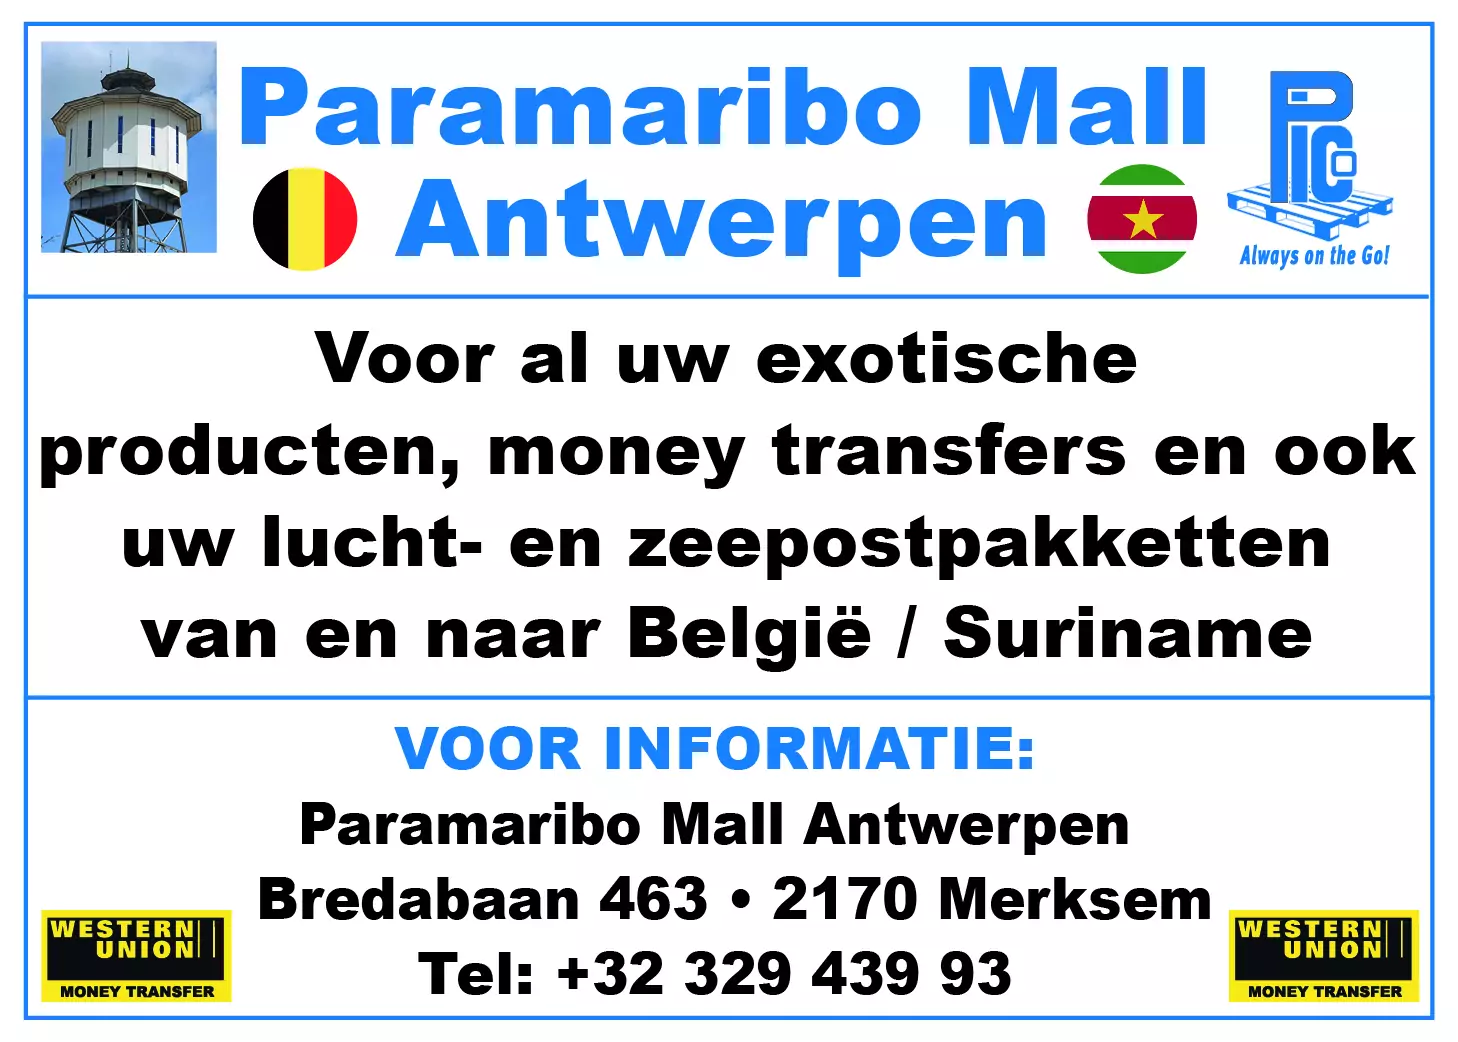 starnieuws-paramaribo-mall-antwerpen-65e8235b0c0fb